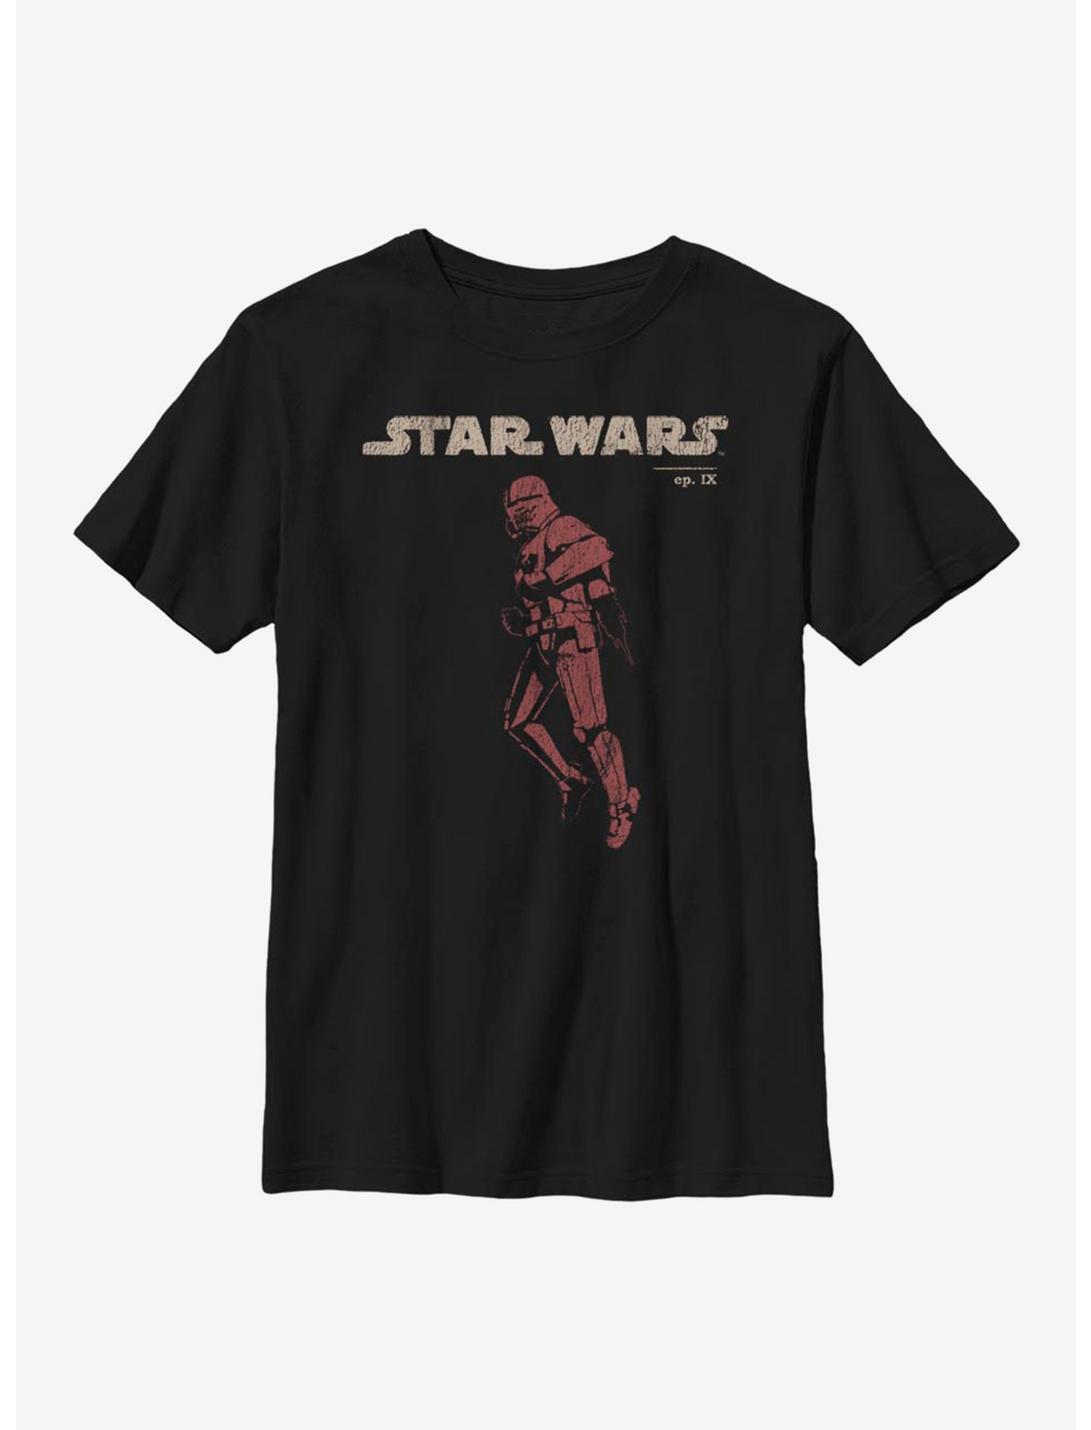 Star Wars Episode IX The Rise Of Skywalker Jet Red Youth T-Shirt, BLACK, hi-res